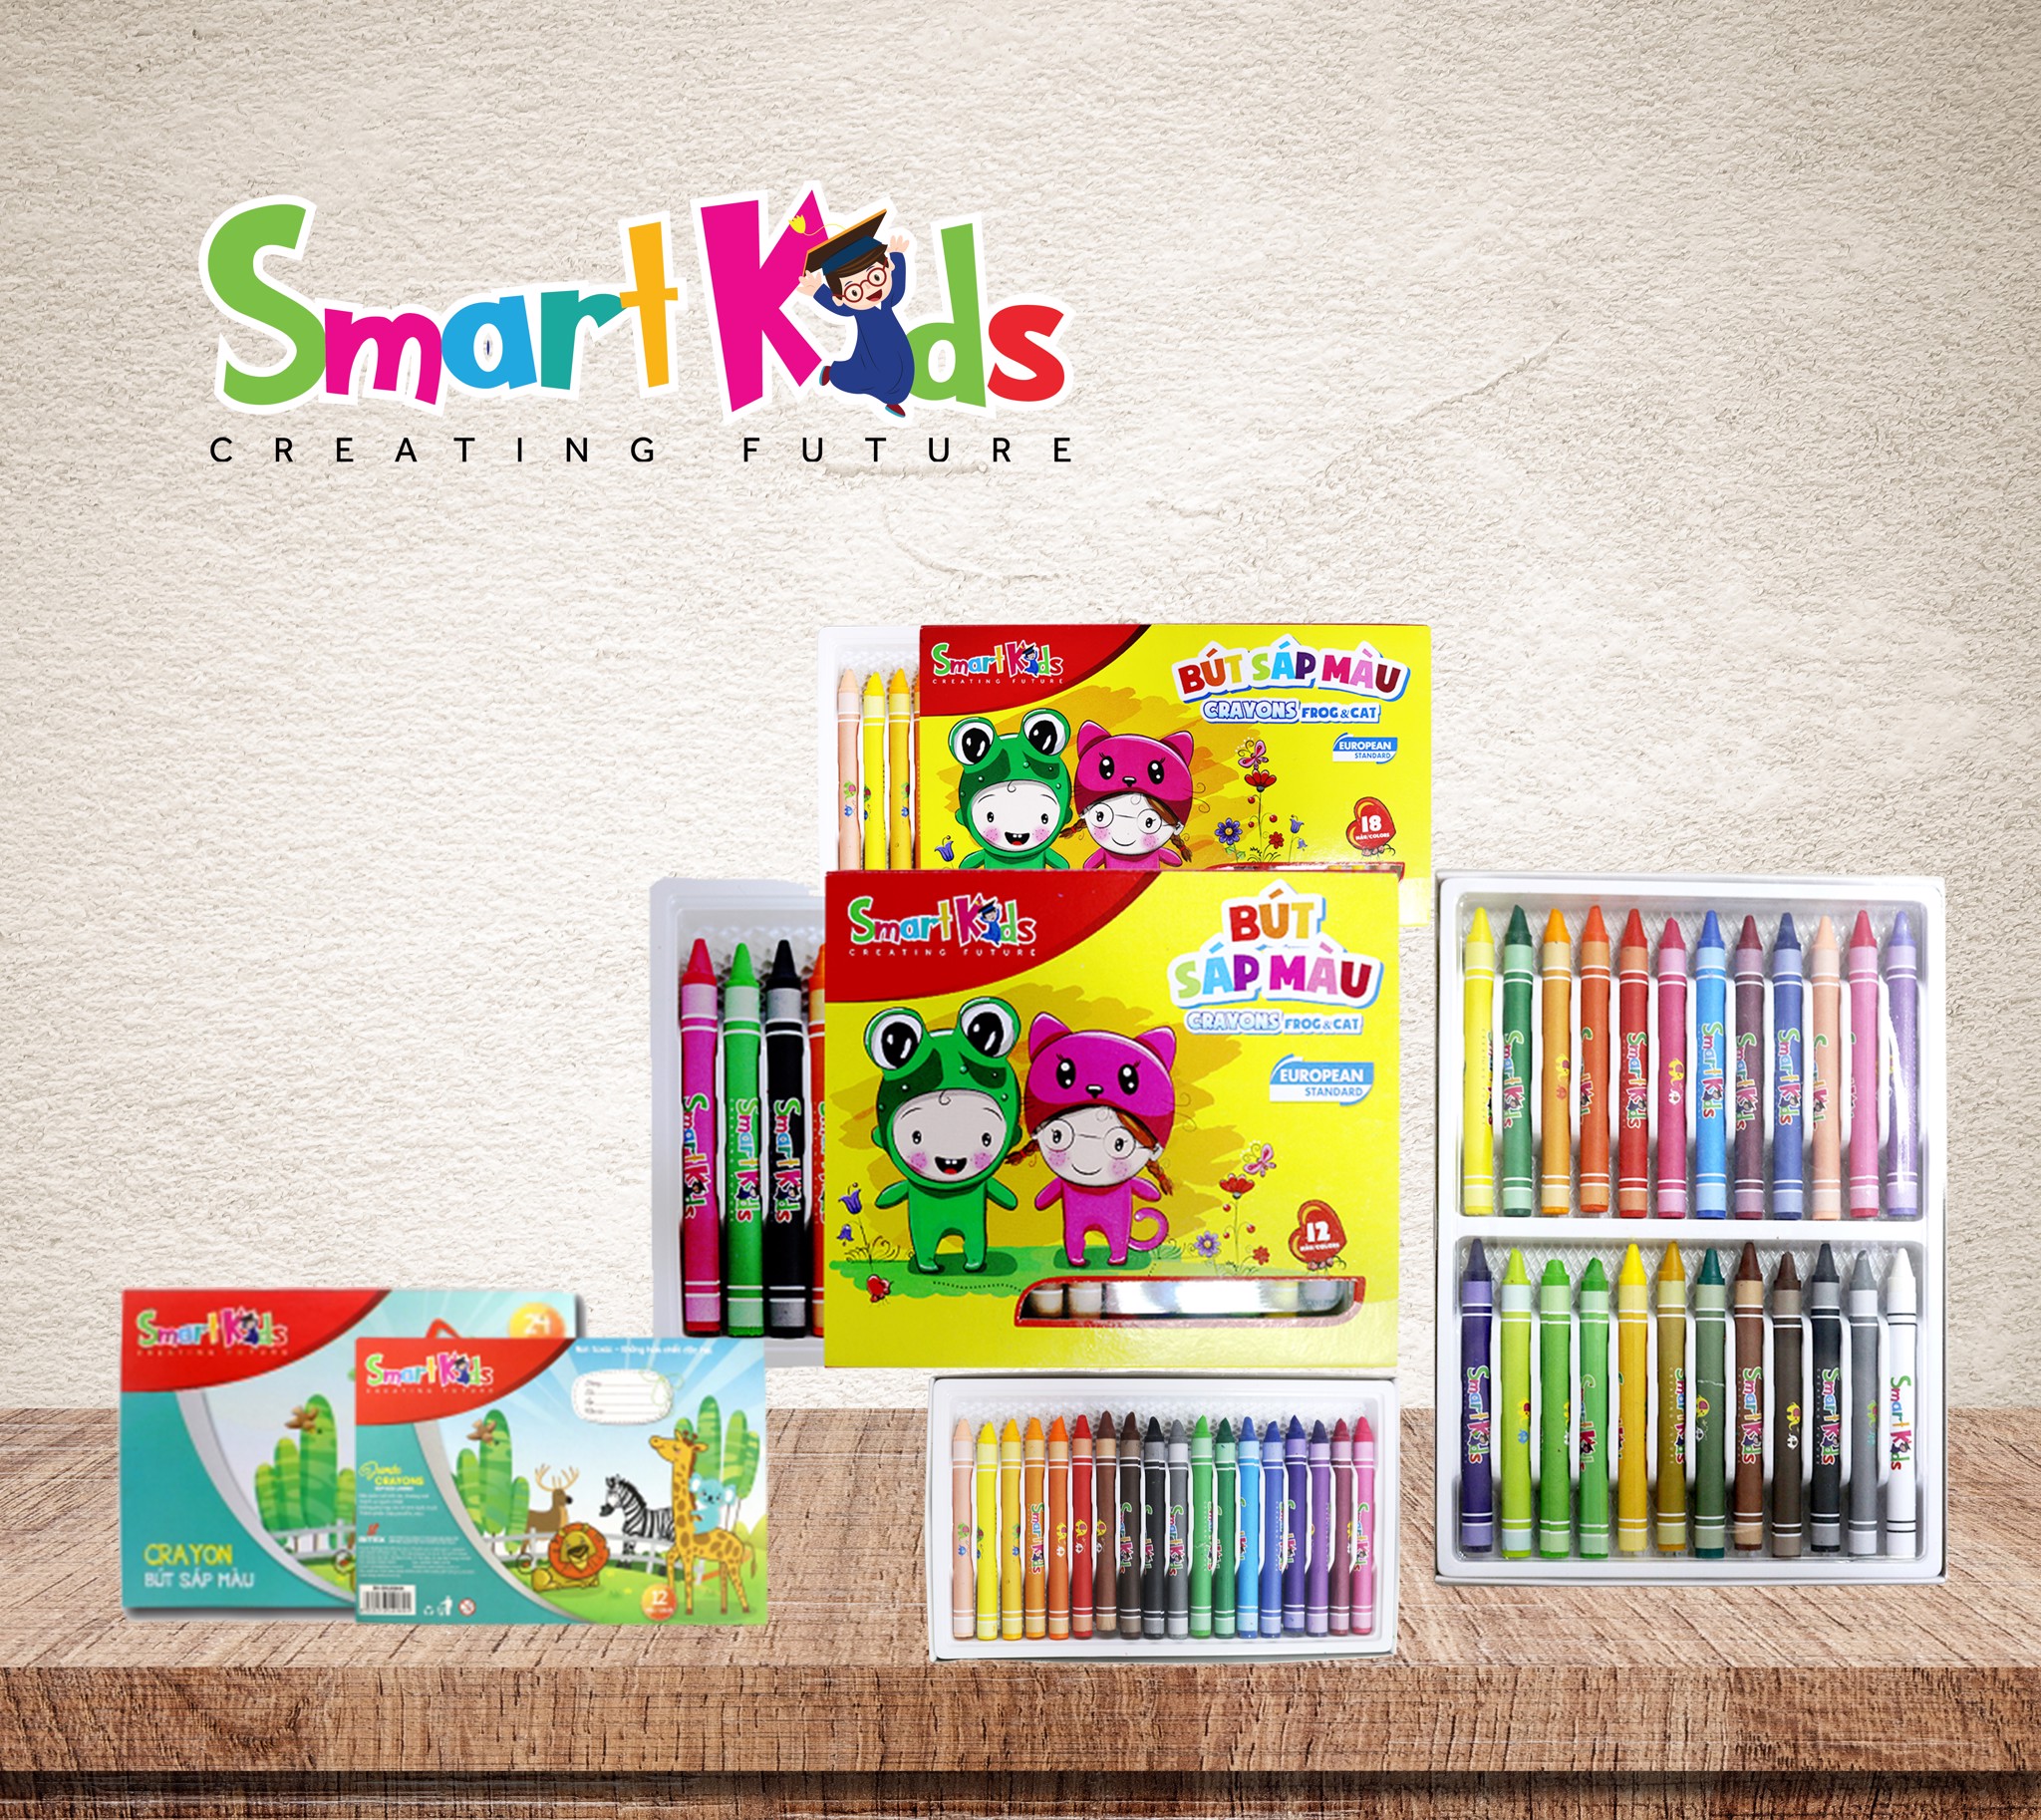 Bút sáp màu Smartkids có ưu điểm gì mà cả mẹ và bé đều yêu thích?